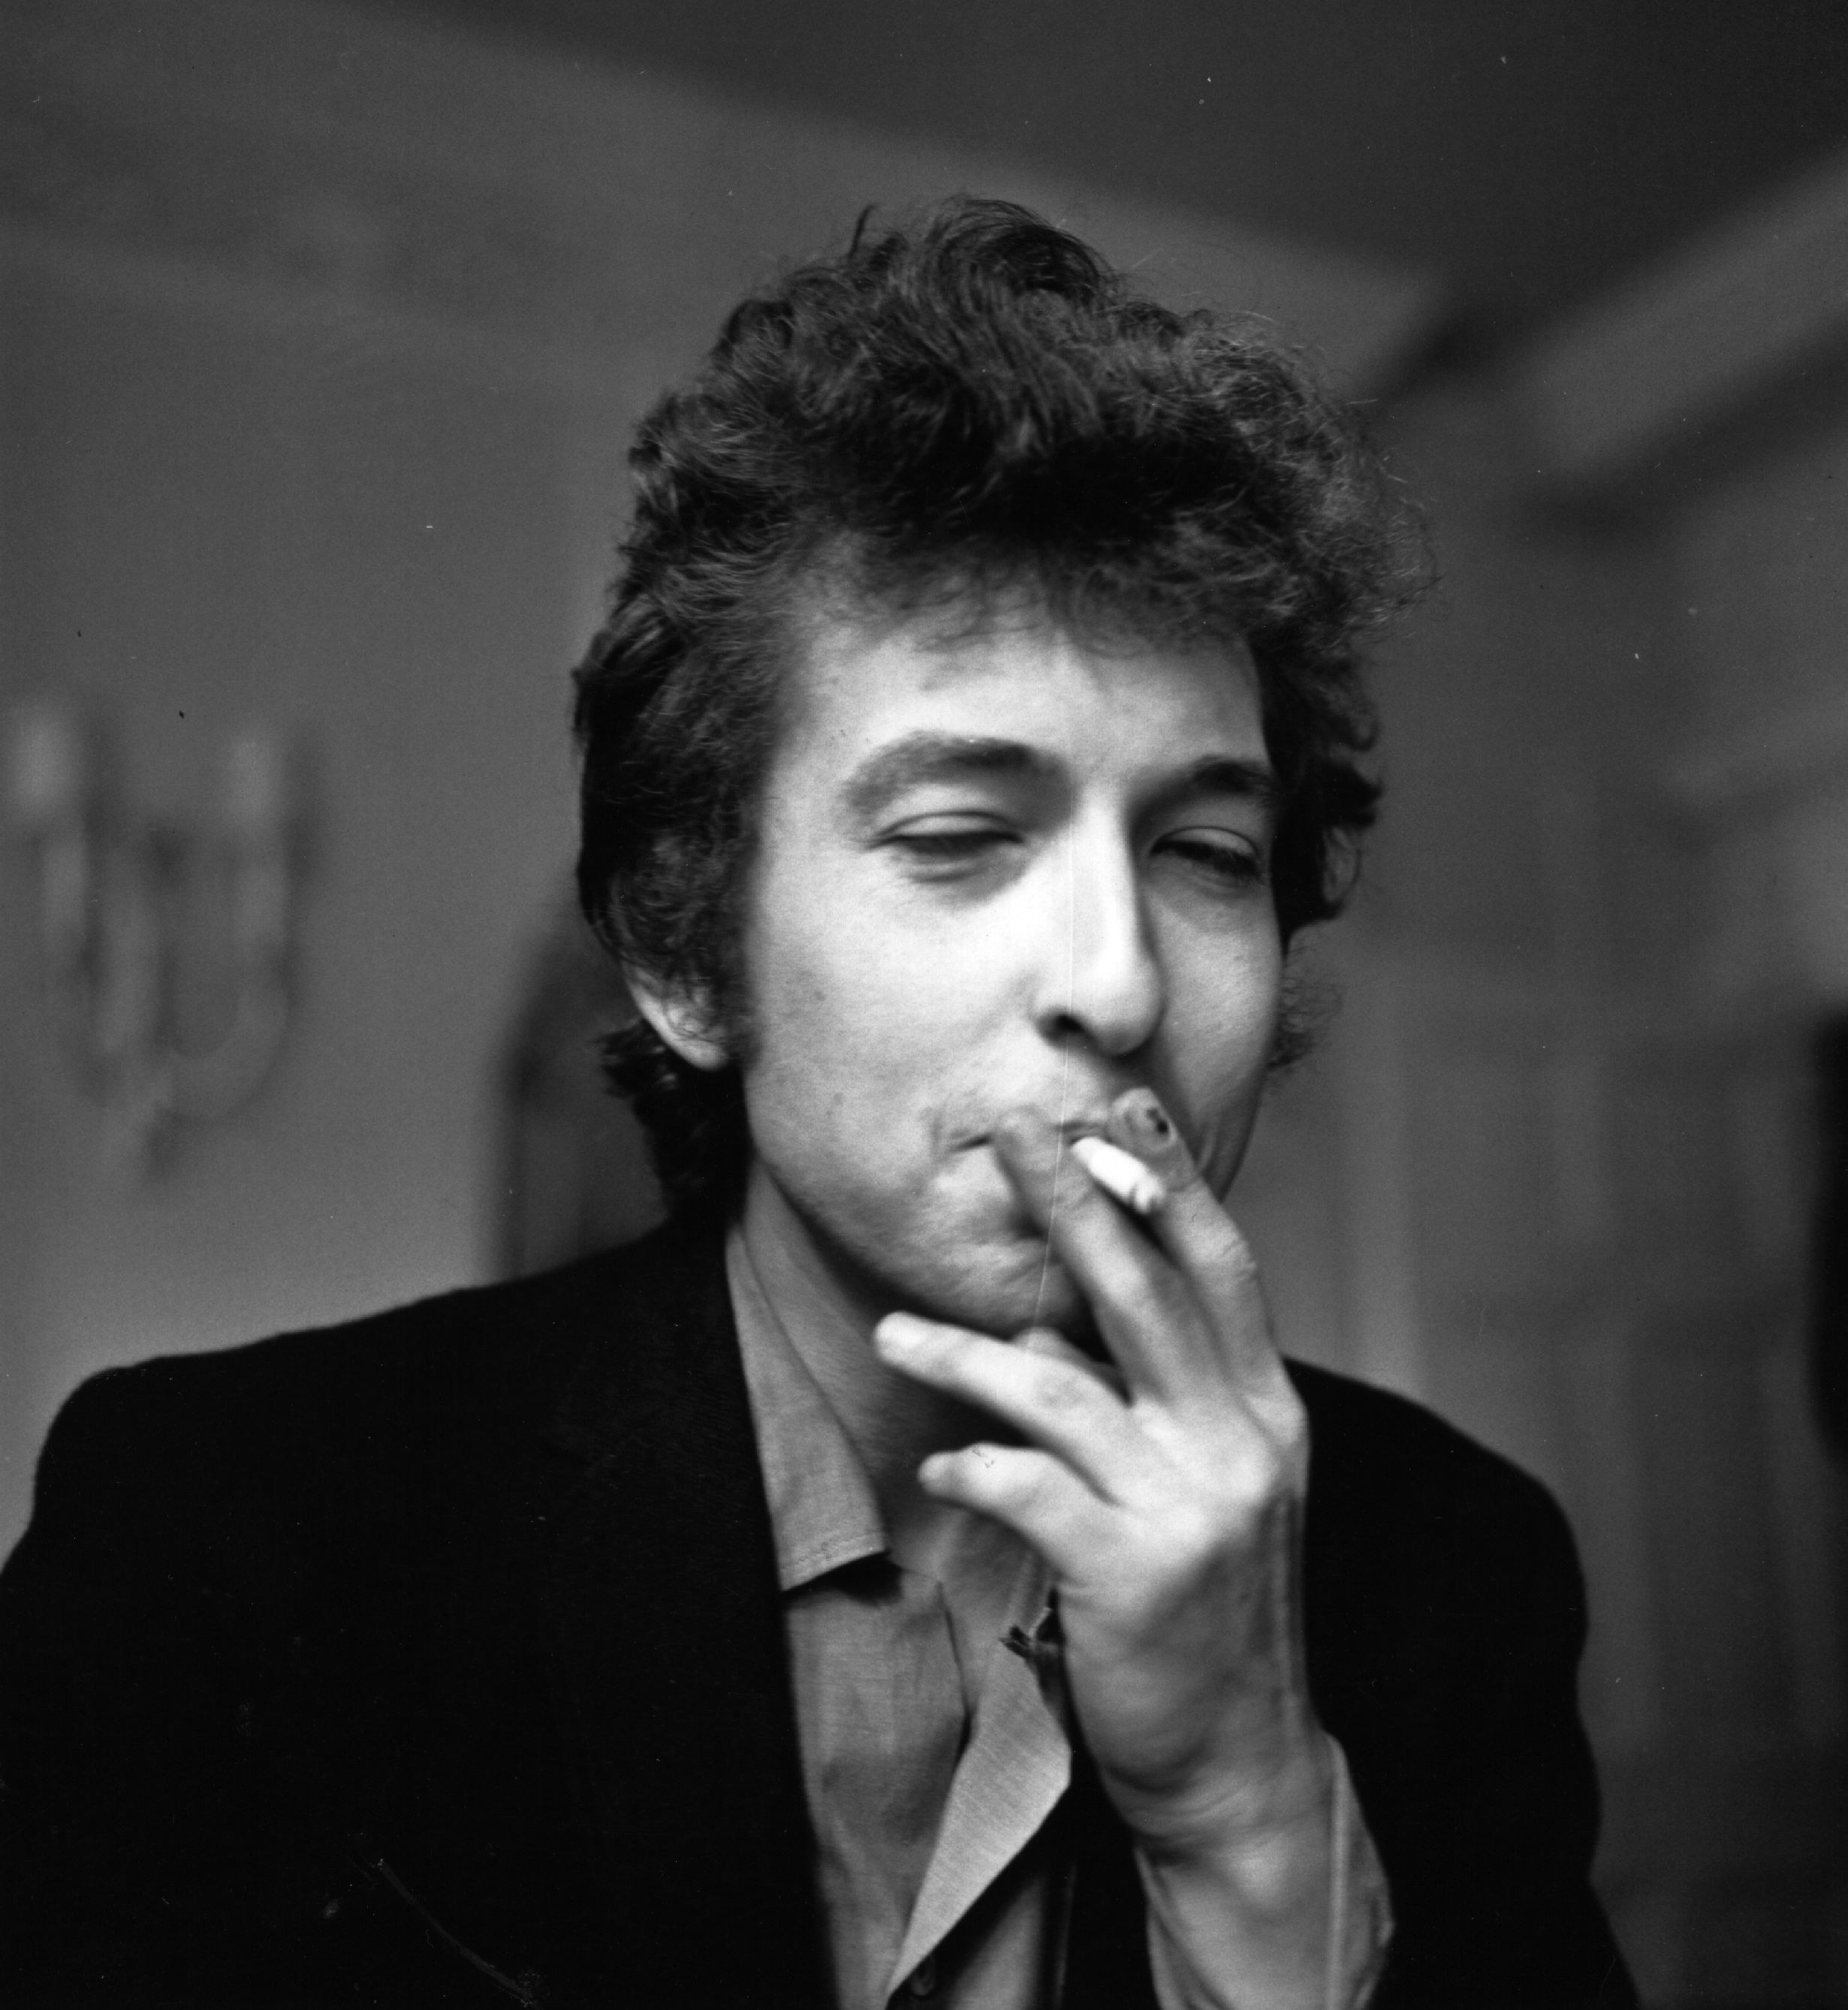 Bob Dylan smoking a cigarette